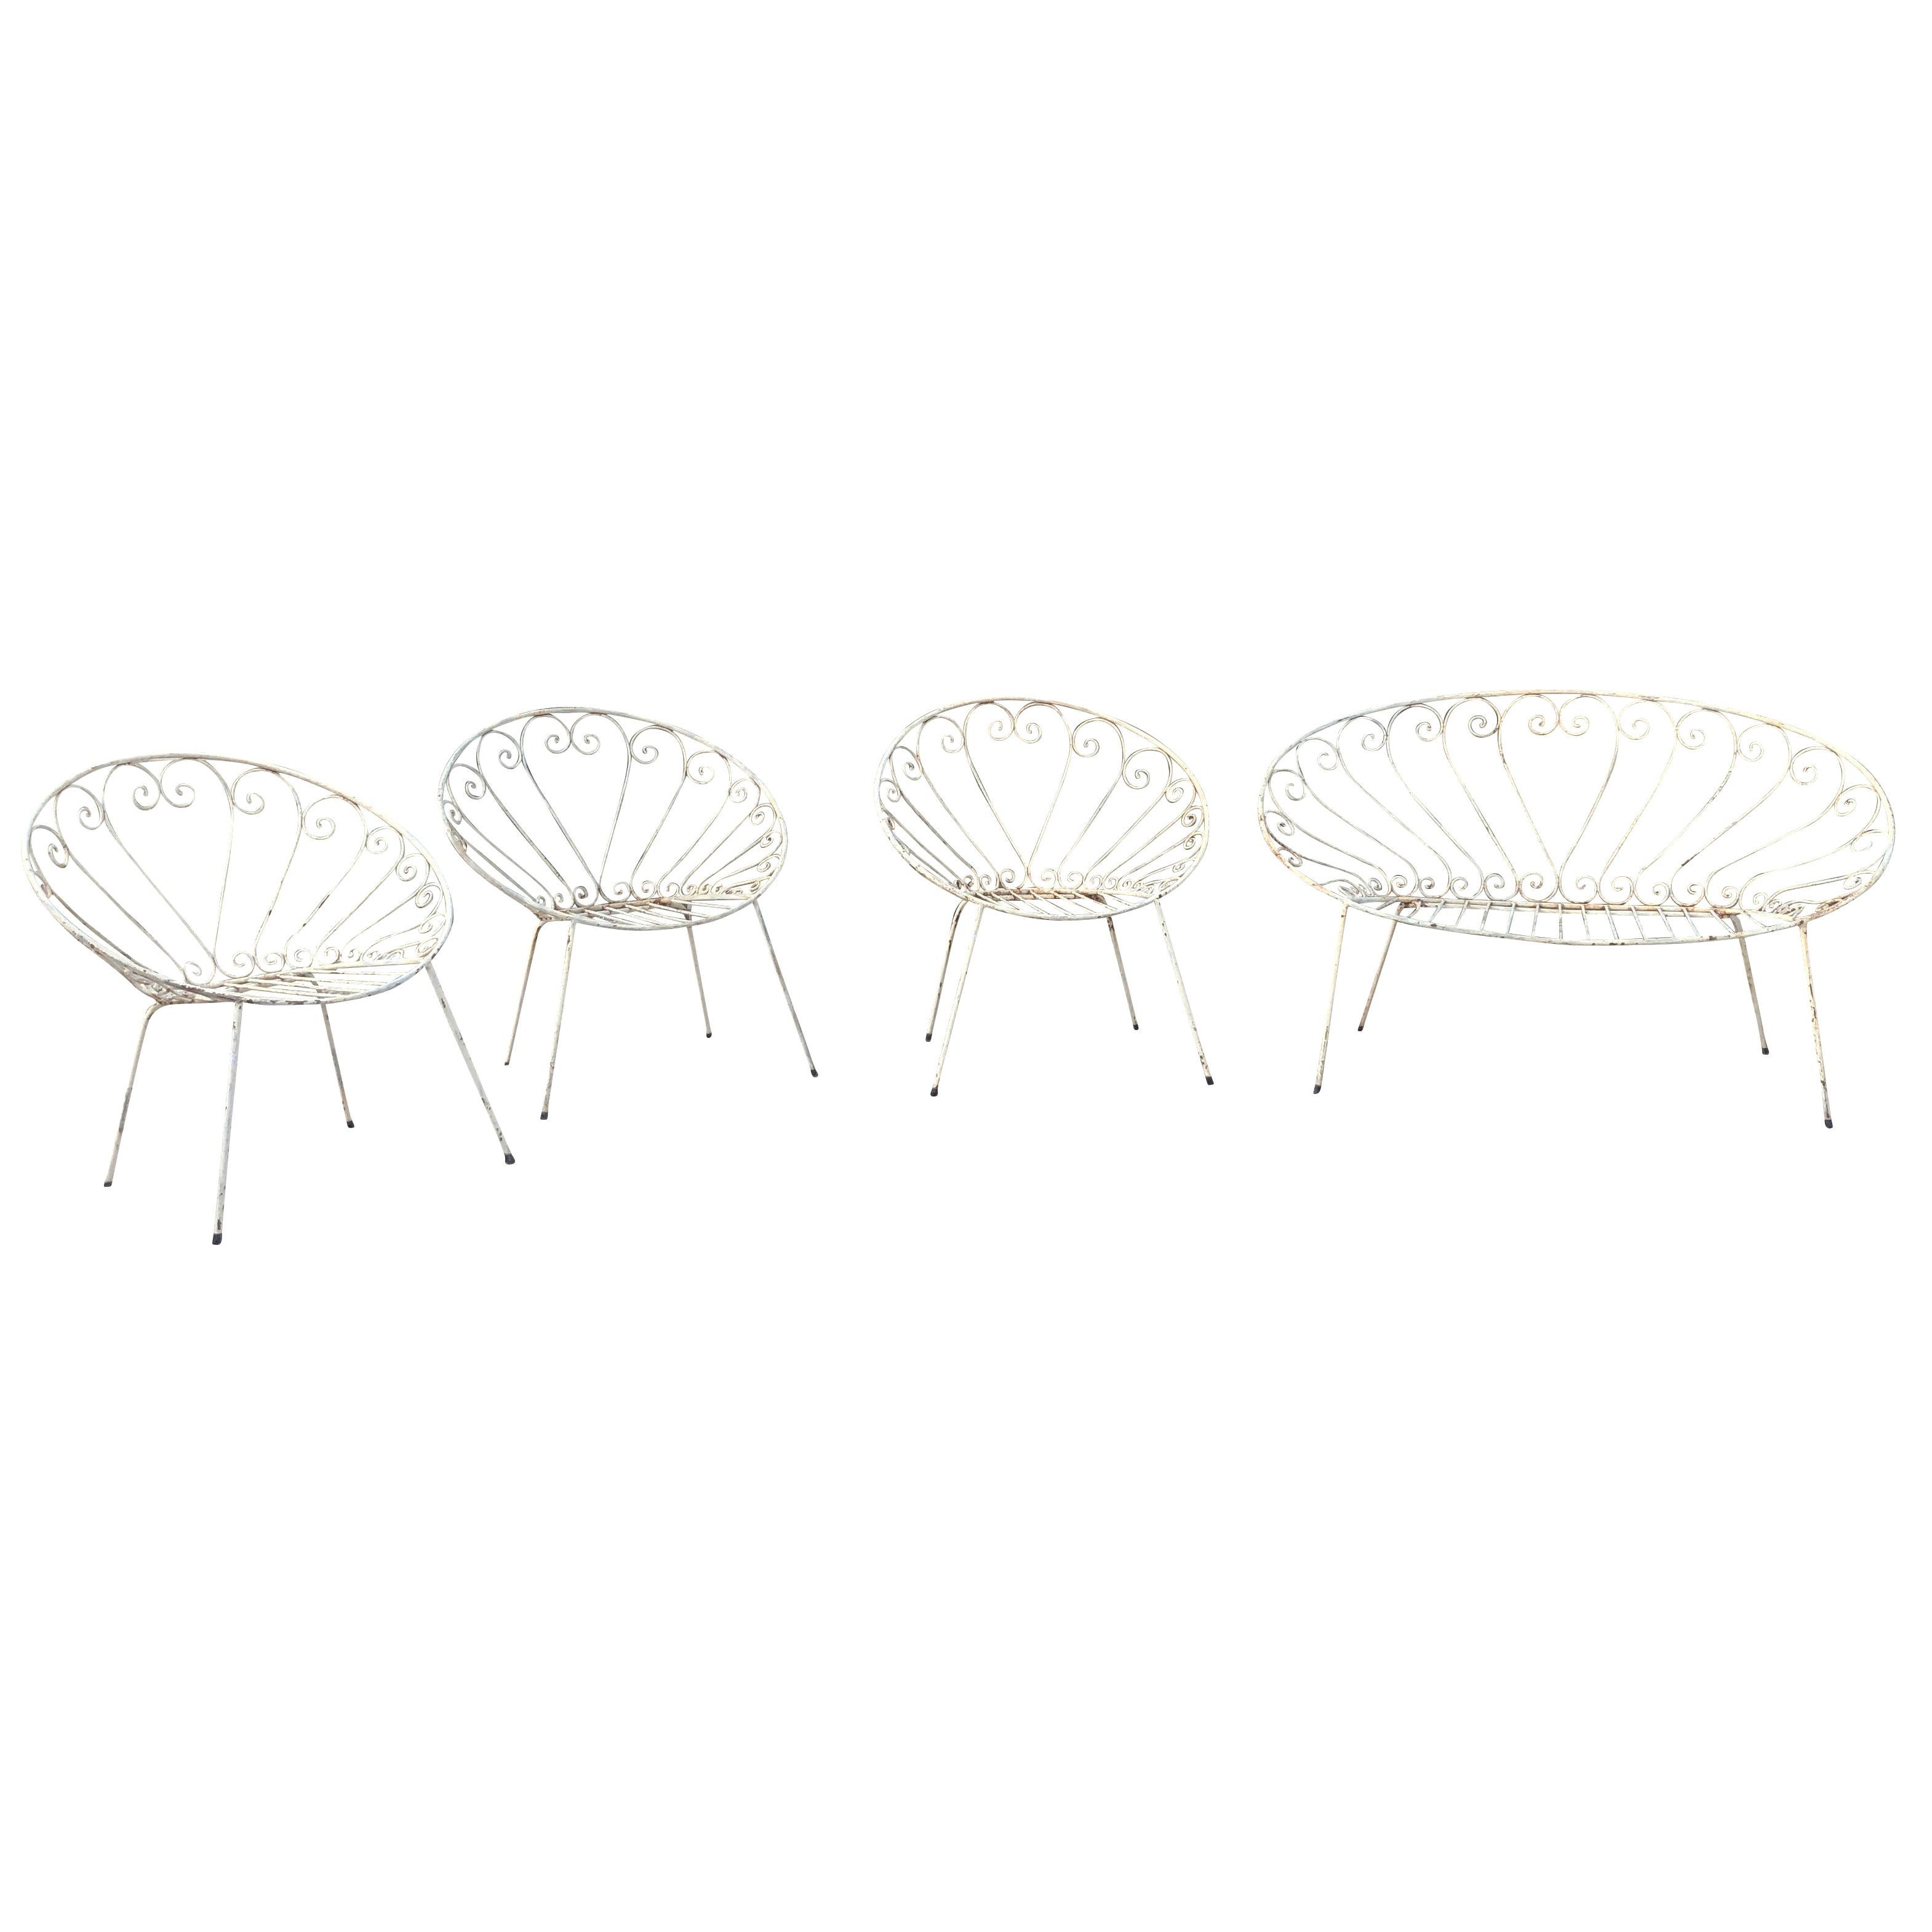 Mid-Century Modern, eine Reihe von weißen Vintage-Metall-Gartenmöbeln, bestehend aus einer zweisitzigen Bank und drei Stühlen. Wird Stanislaus Karasek und Co. zugeschrieben. Dieses Vintage-Set wurde aus weiß lackiertem Metall hergestellt. In gutem